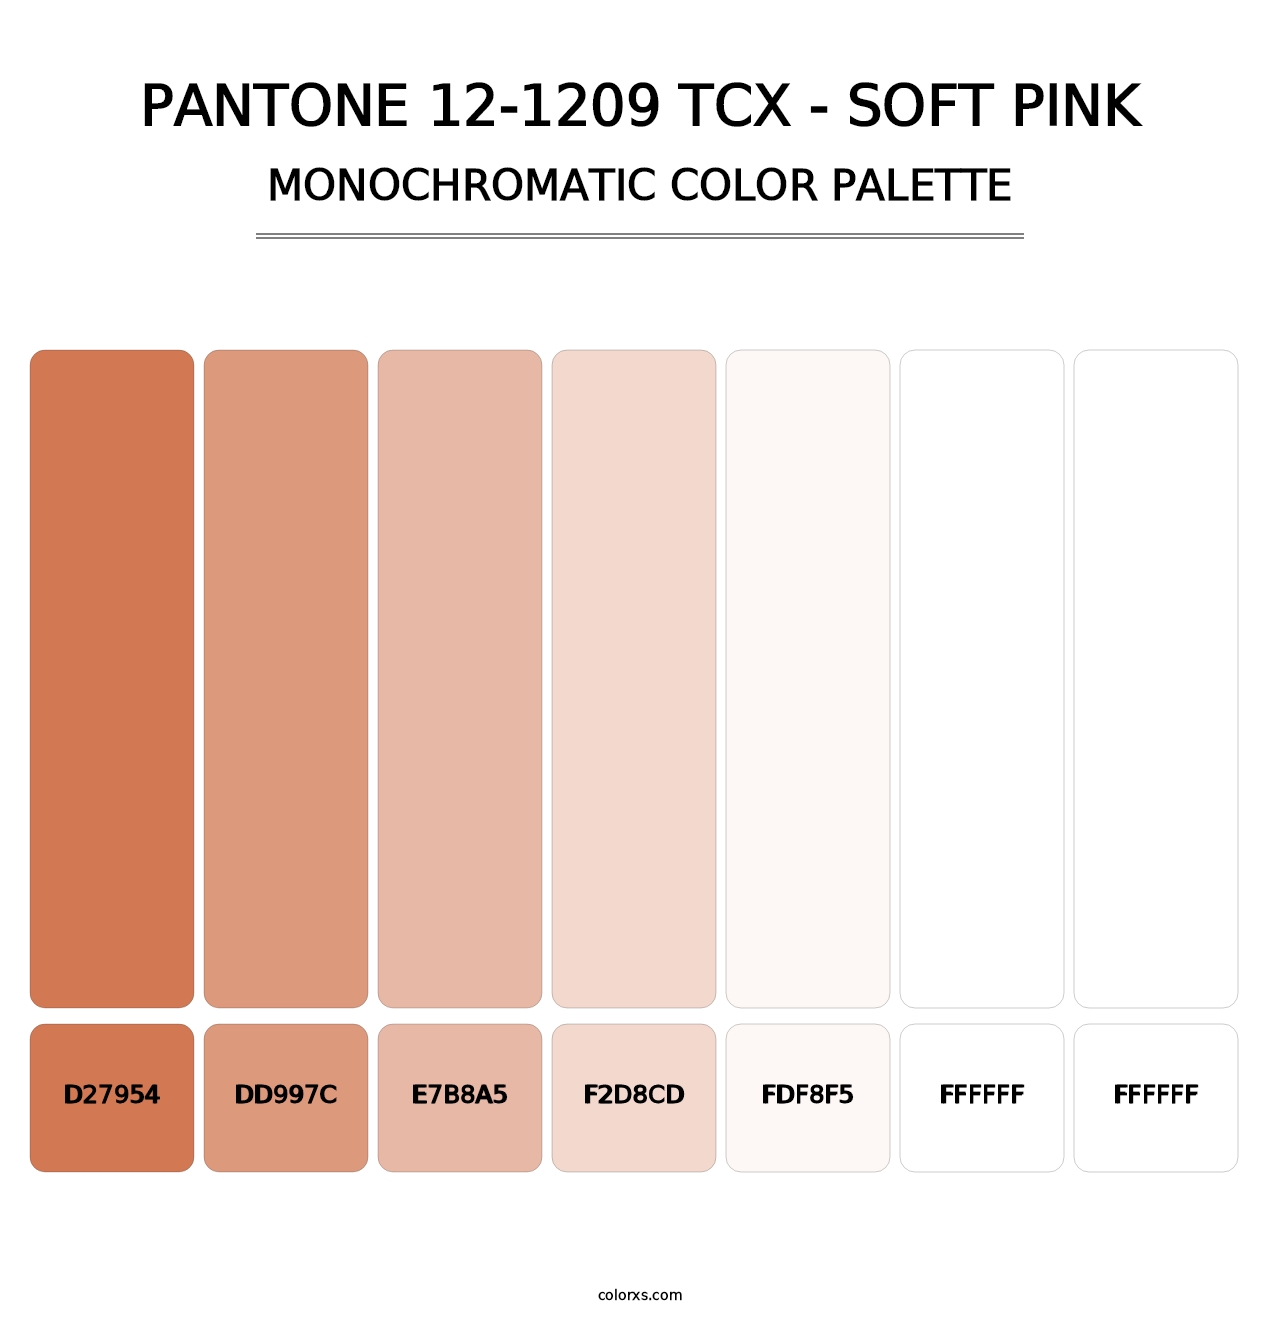 PANTONE 12-1209 TCX - Soft Pink - Monochromatic Color Palette